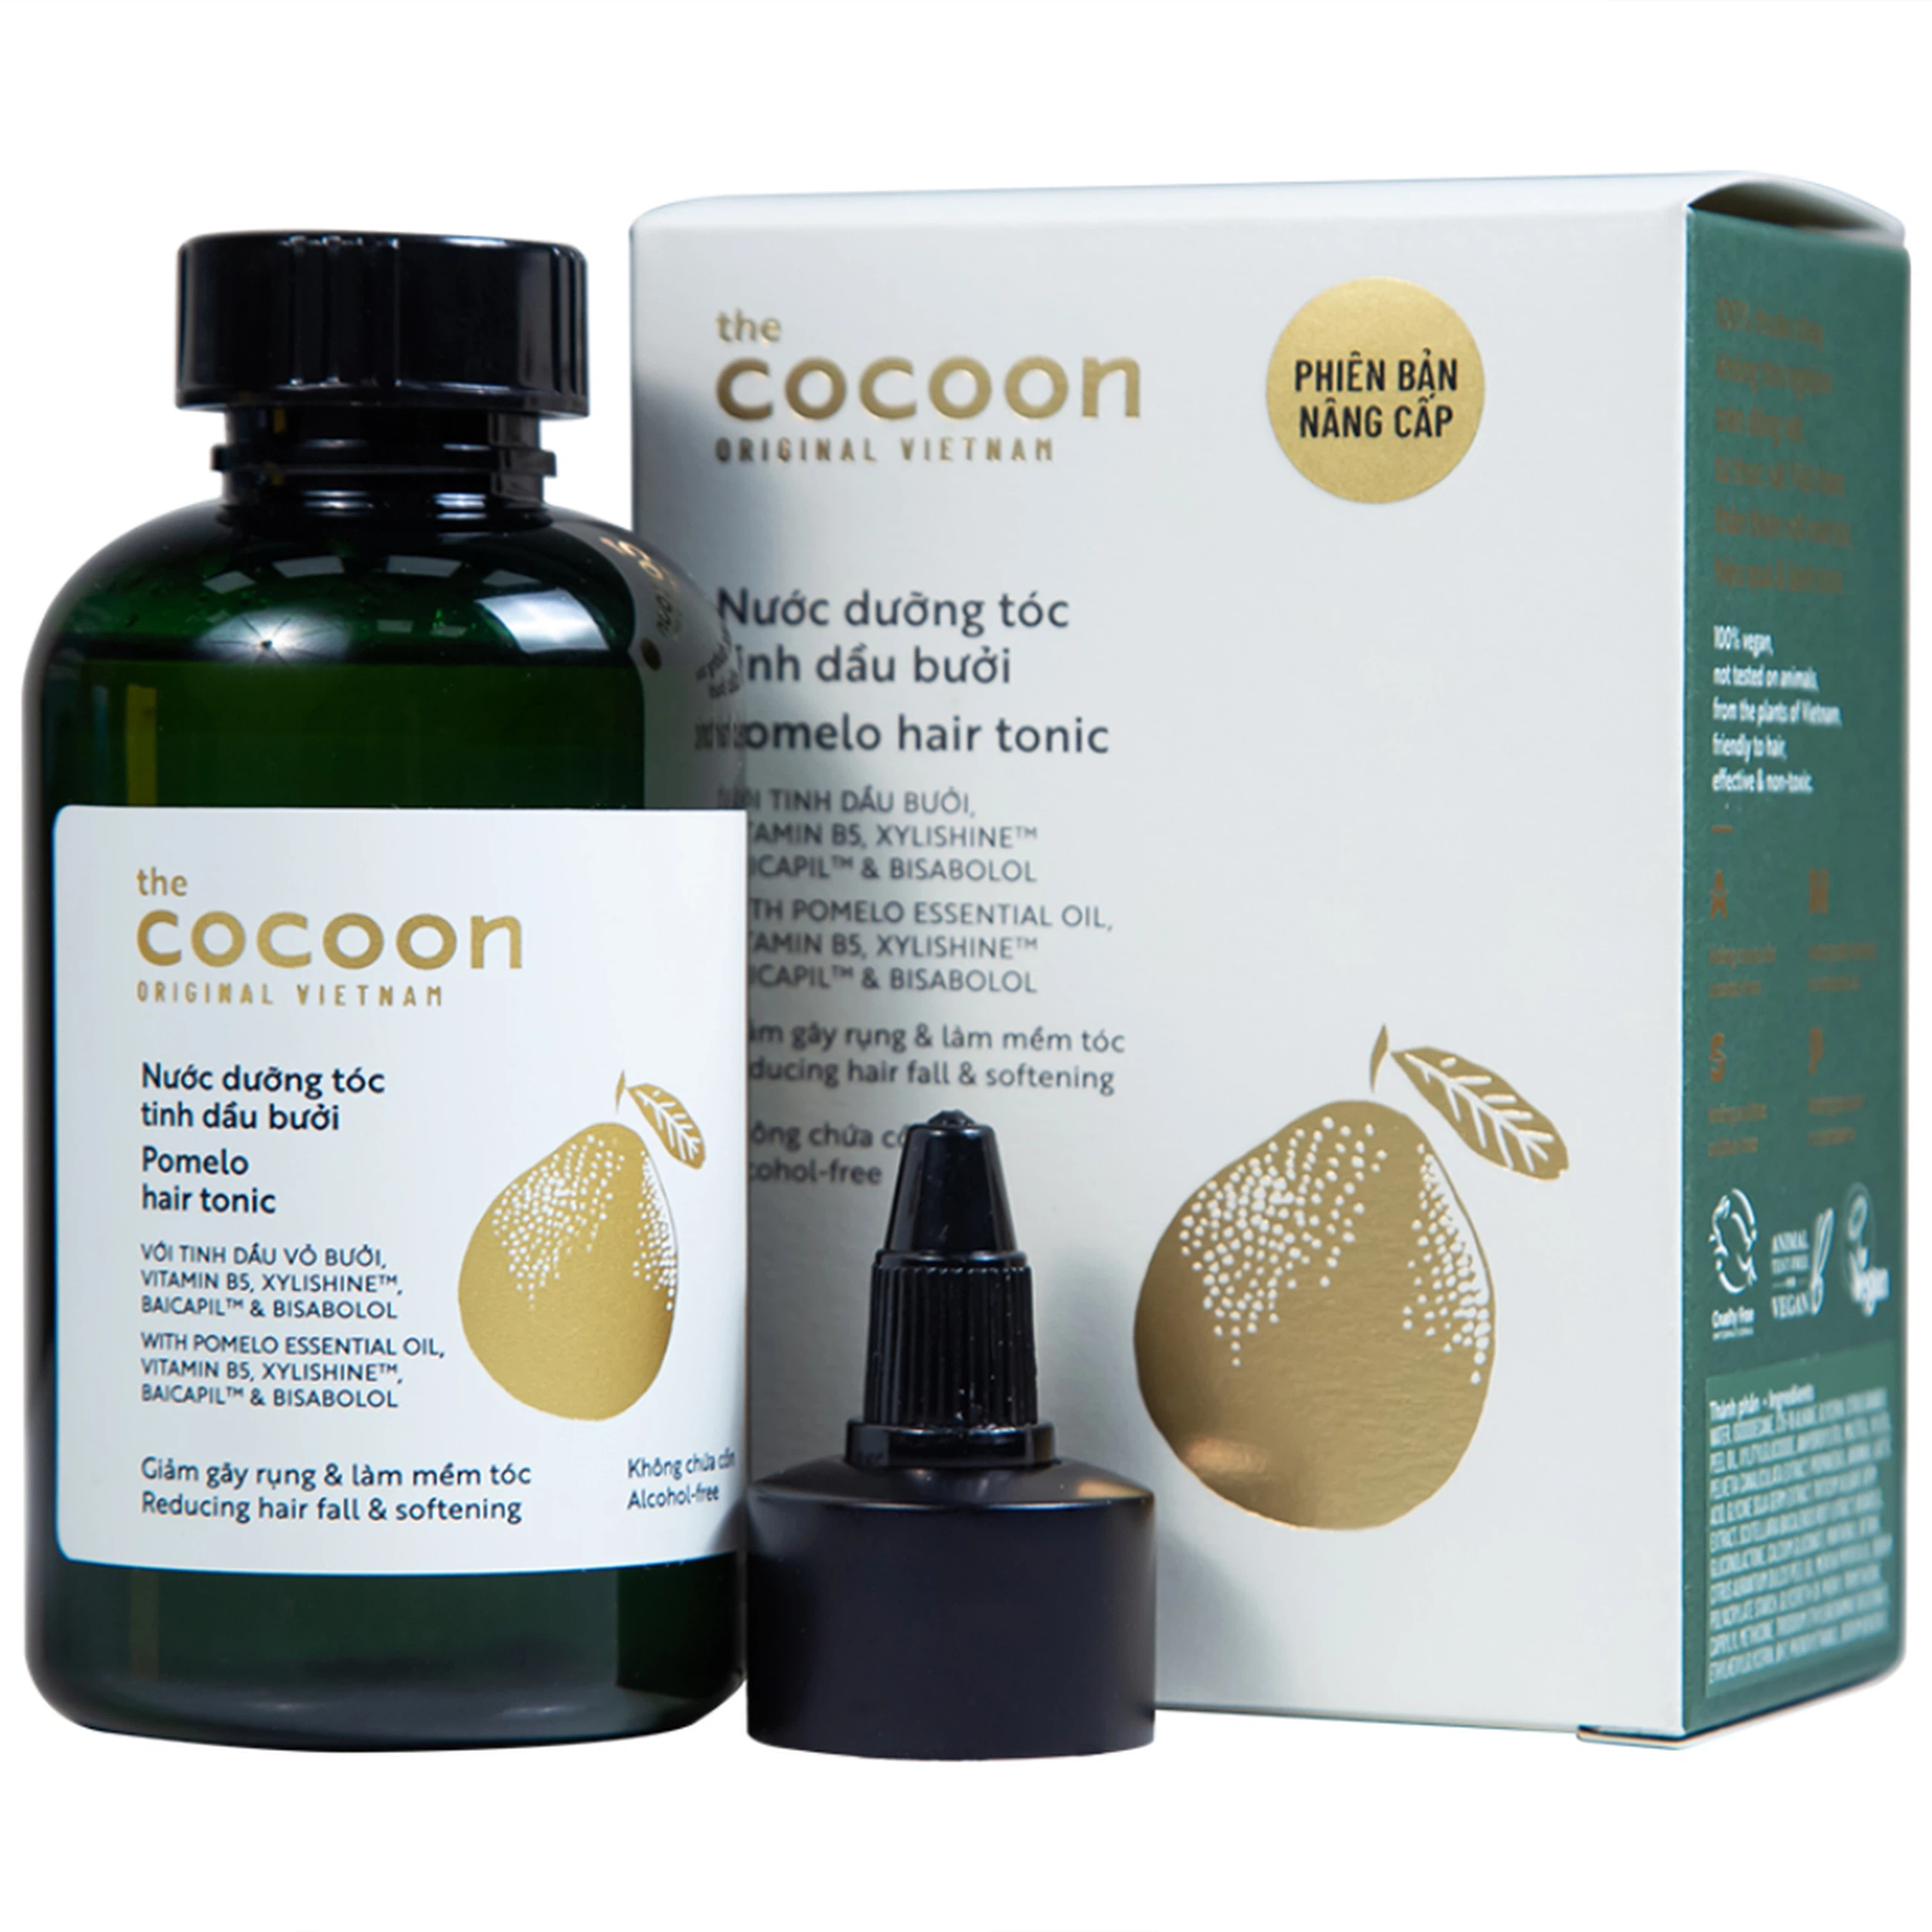 Nước dưỡng tóc tinh dầu bưởi Cocoon giảm gãy rụng và làm mềm tóc (140ml)